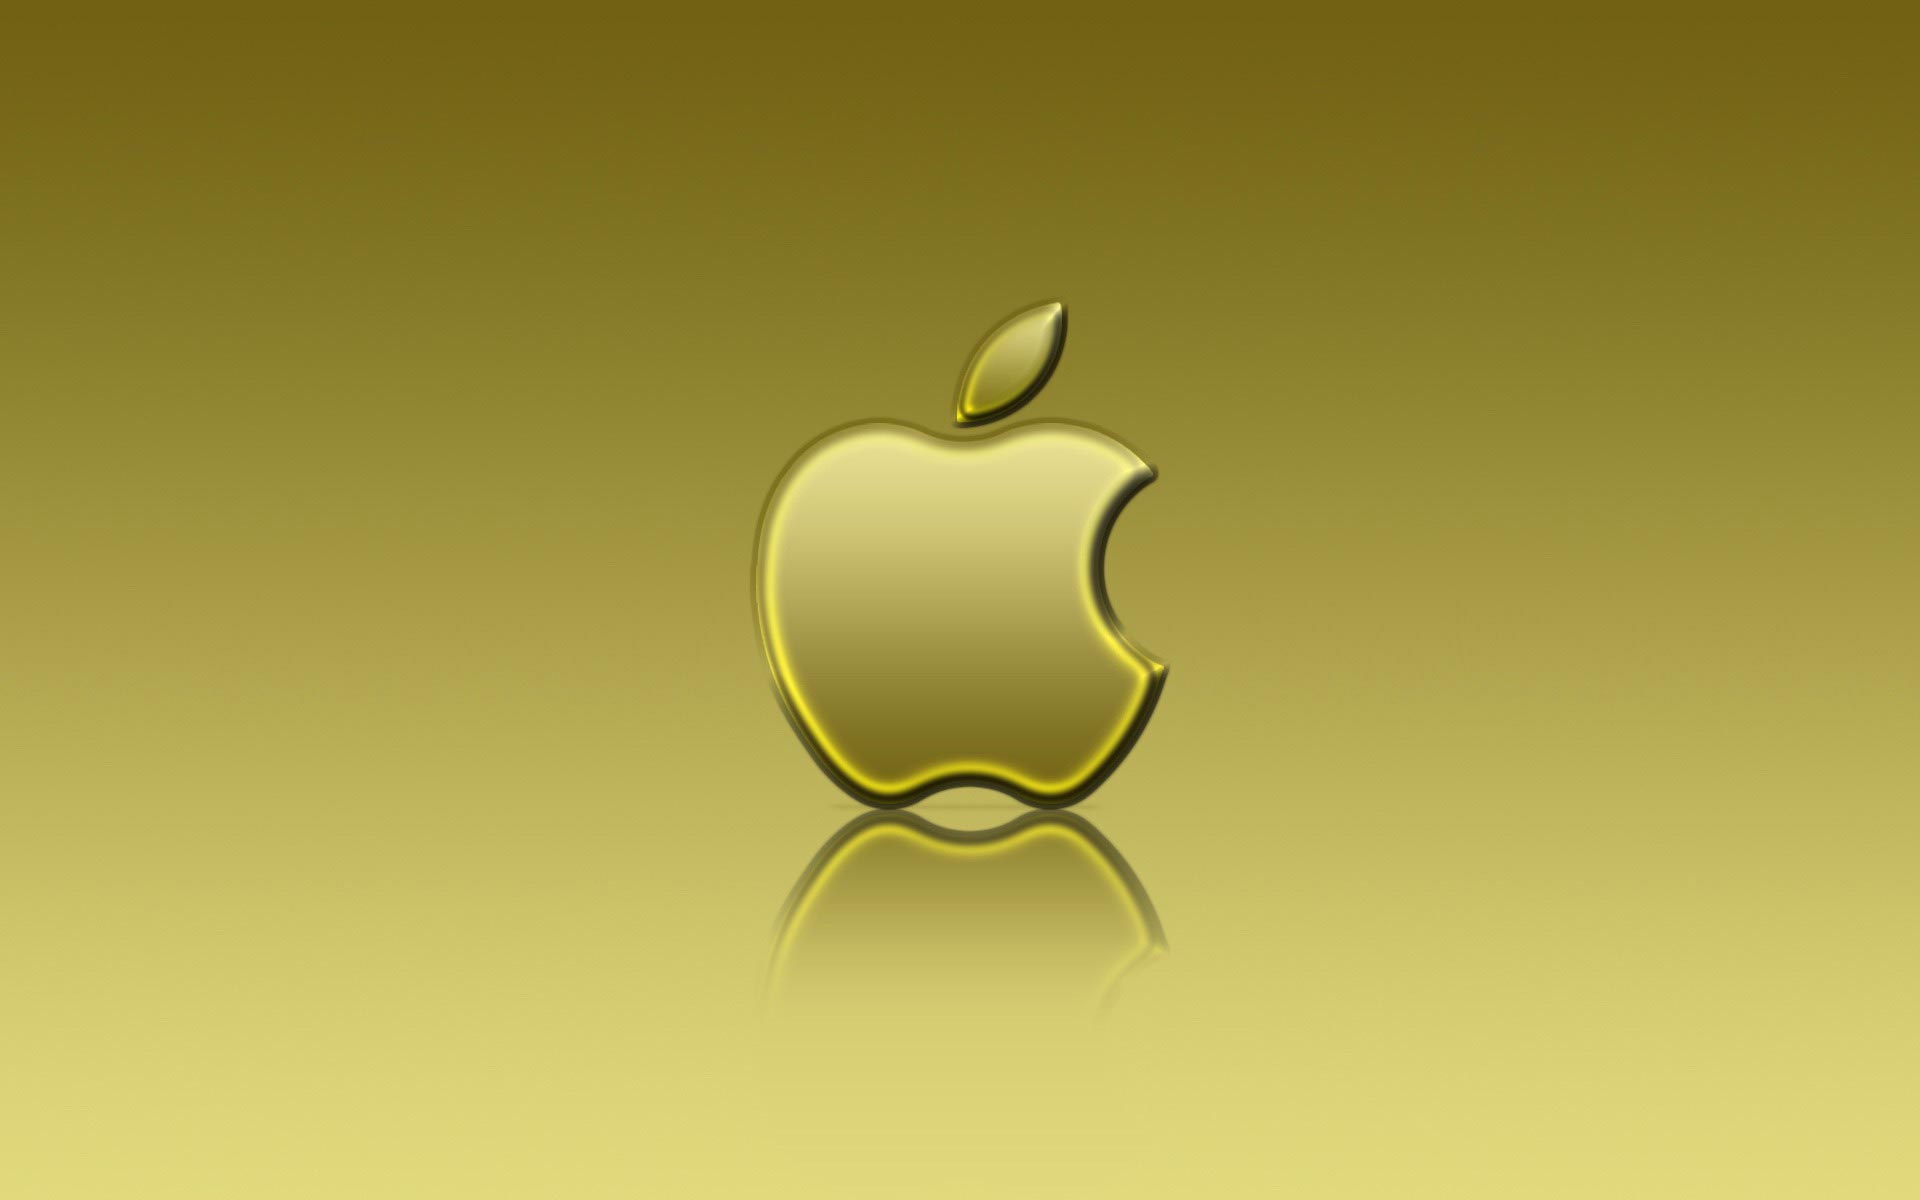 Golden Apple Desktop Wallpaper High Quality